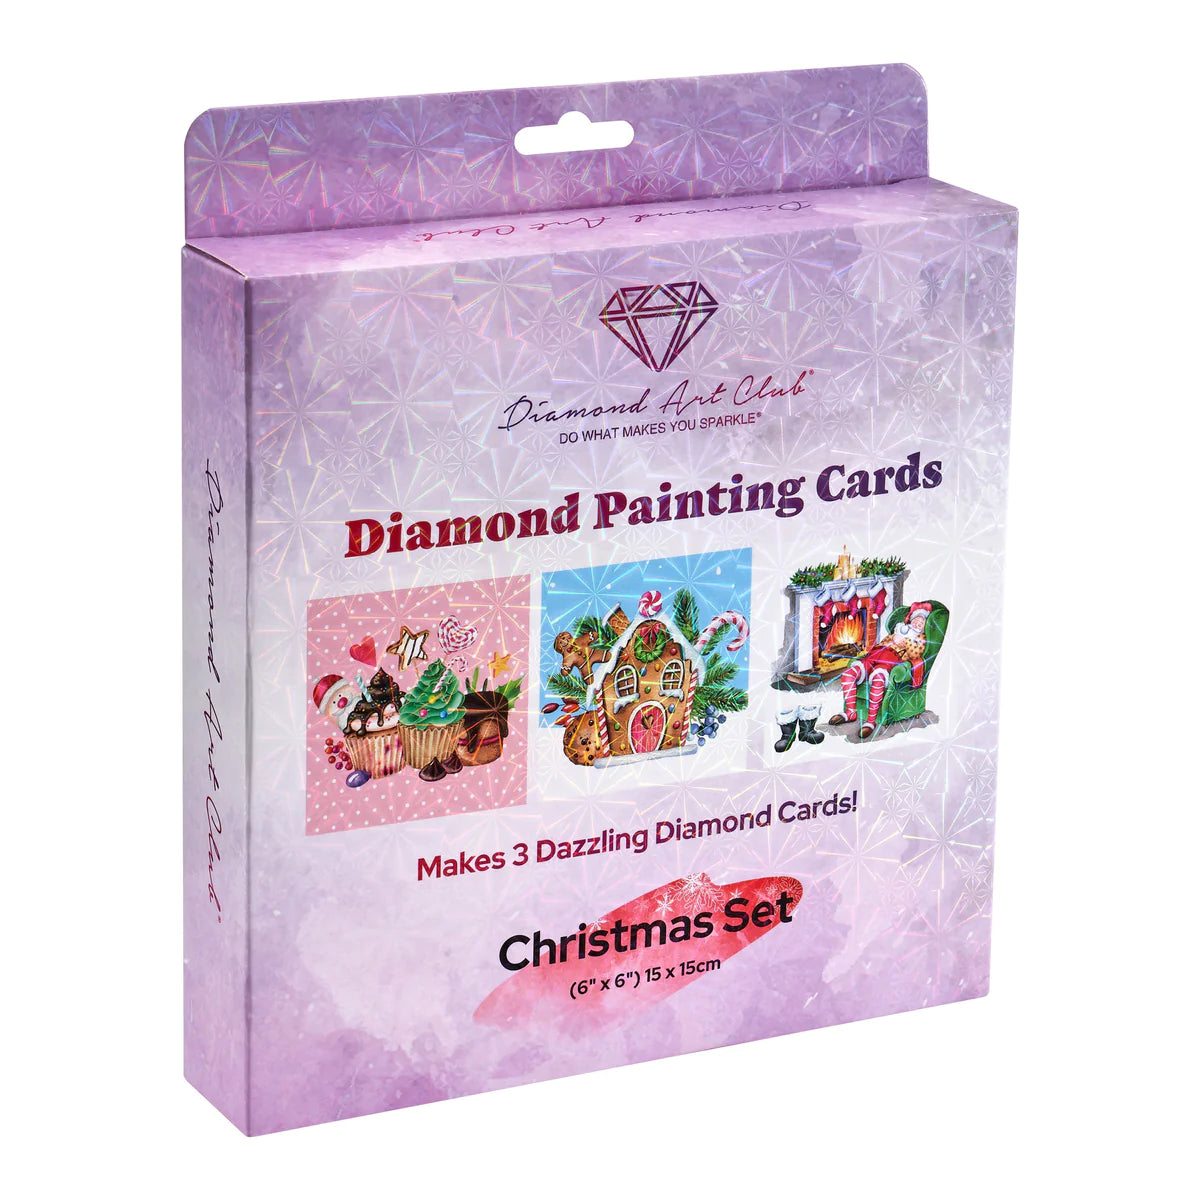 KXCOFTXI Diamond Painting Birthday Cards, DIY Diamond Painting Kits  Greeting Cards for Kids and Adults, Diamond Painting Christmas cards 6 Pack